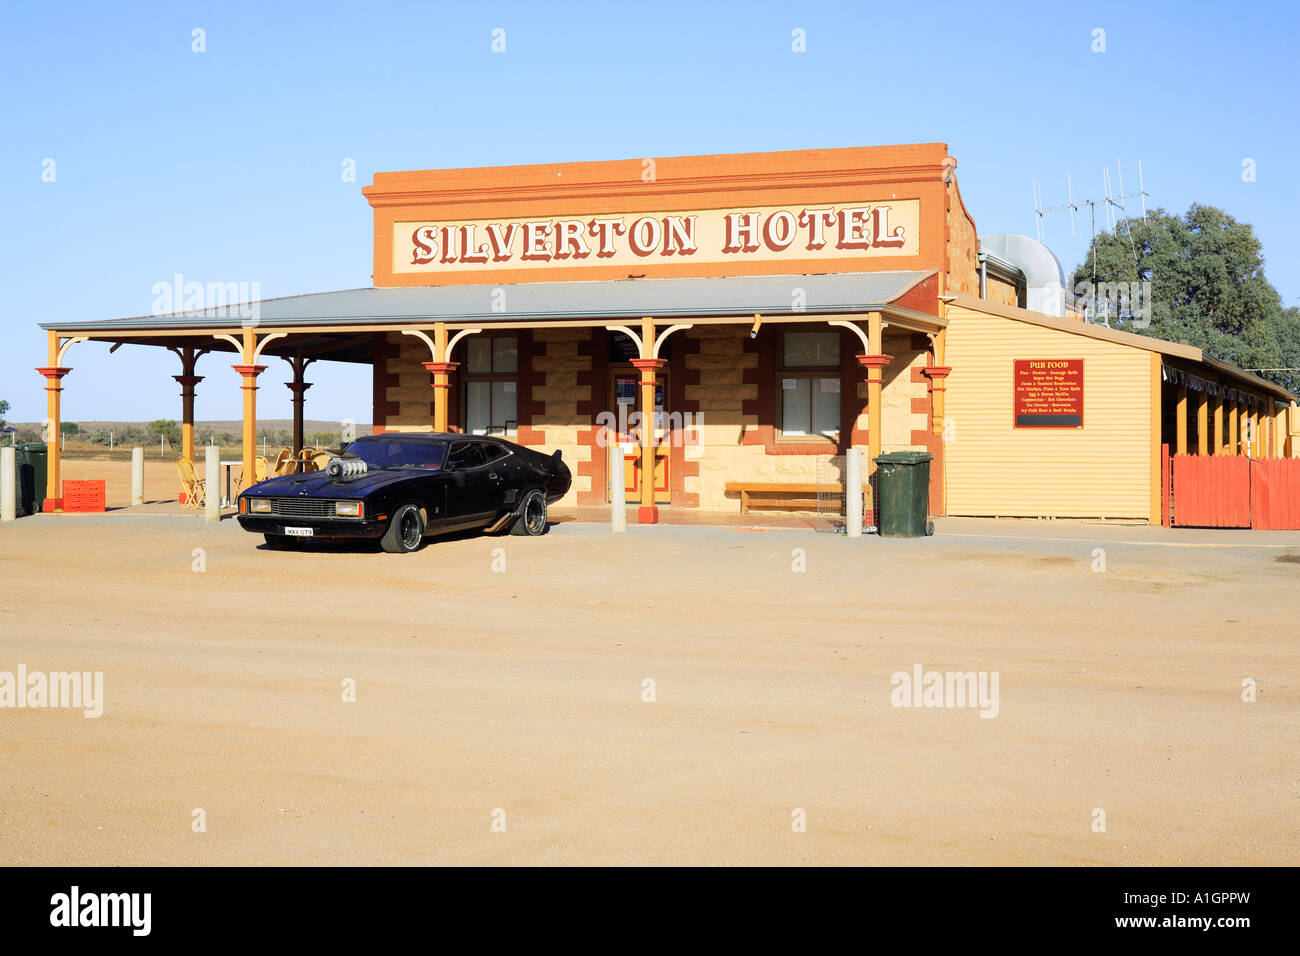 Hôtel Silverton historique avec black car utilisé dans Mad Max film  Silverton près de Broken Hill Australie Nouvelle Galles du Sud Photo Stock  - Alamy